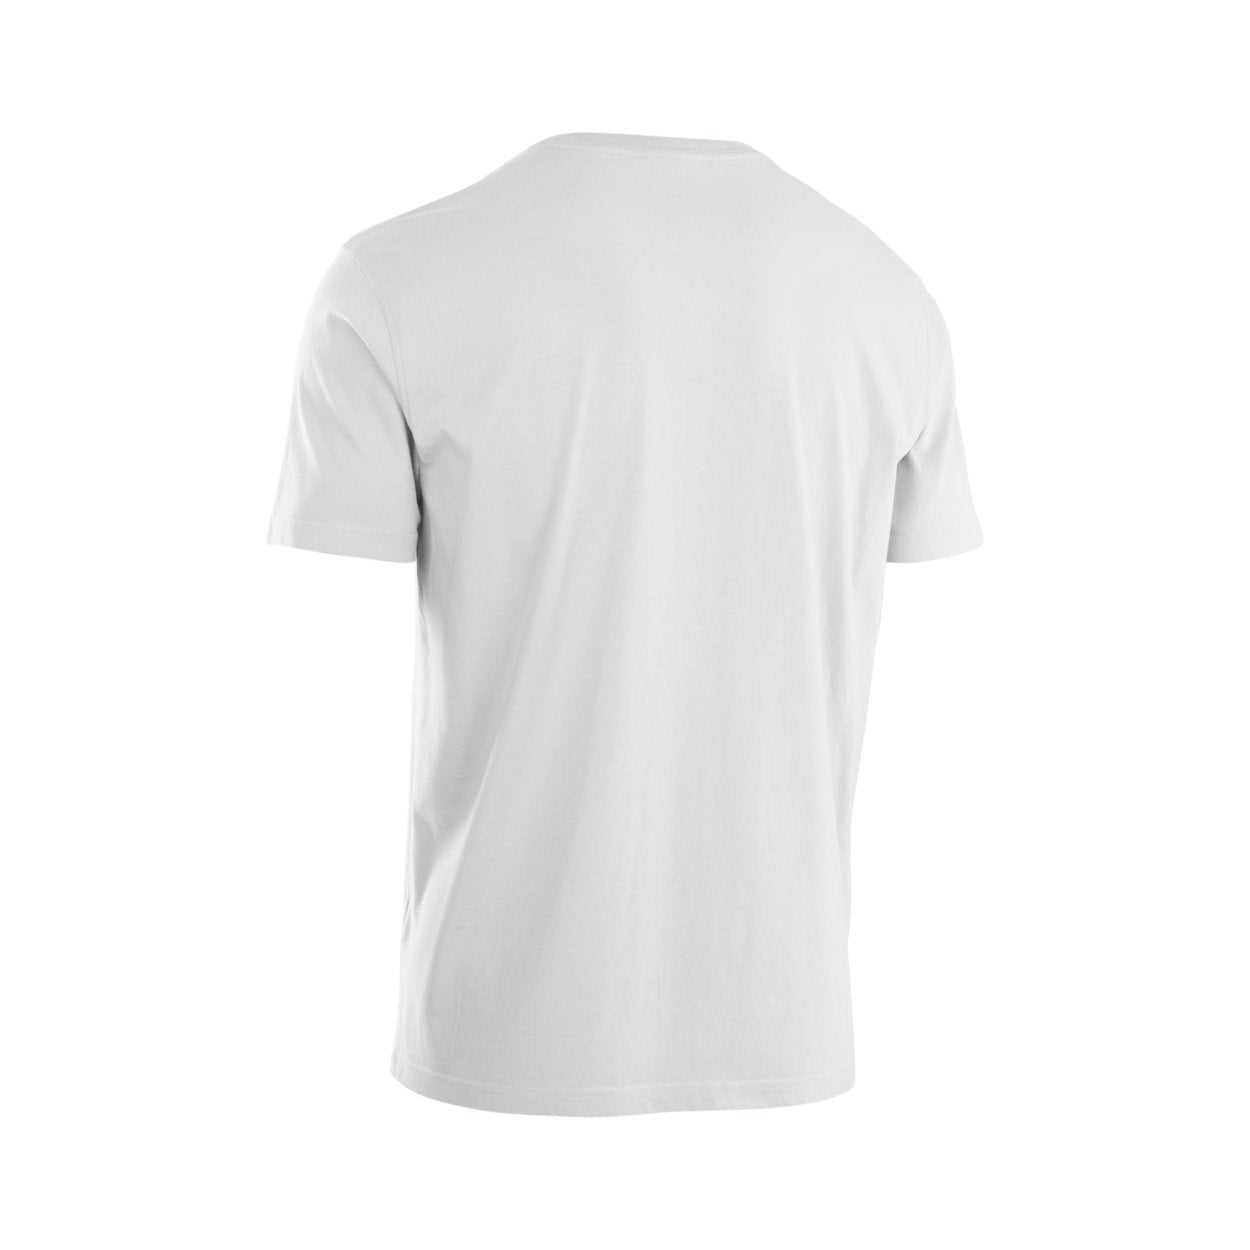 ION Men T-Shirt Logo Shortsleeve 2023 - Worthing Watersports - 9010583036885 - Apparel - ION Bike